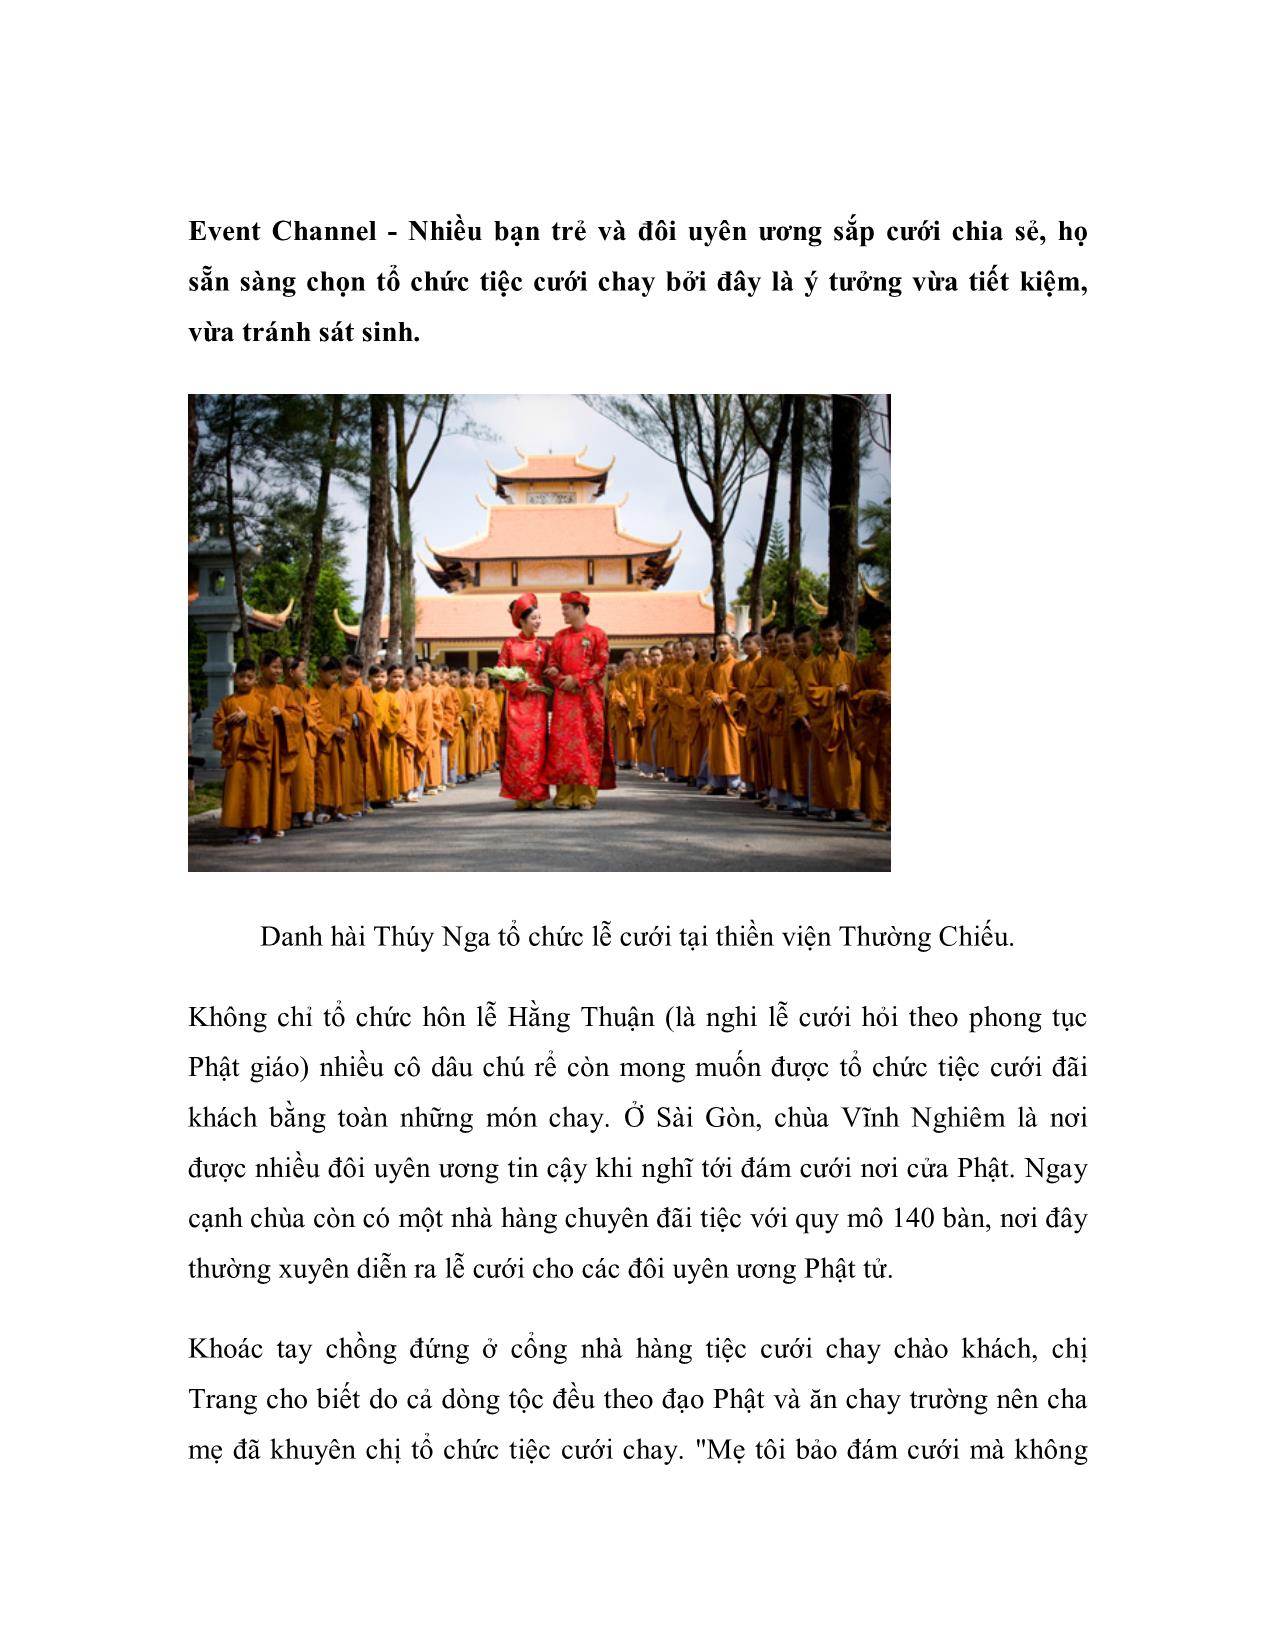 Xu hướng tổ chức đám cưới nơi cửa Phật trang 2